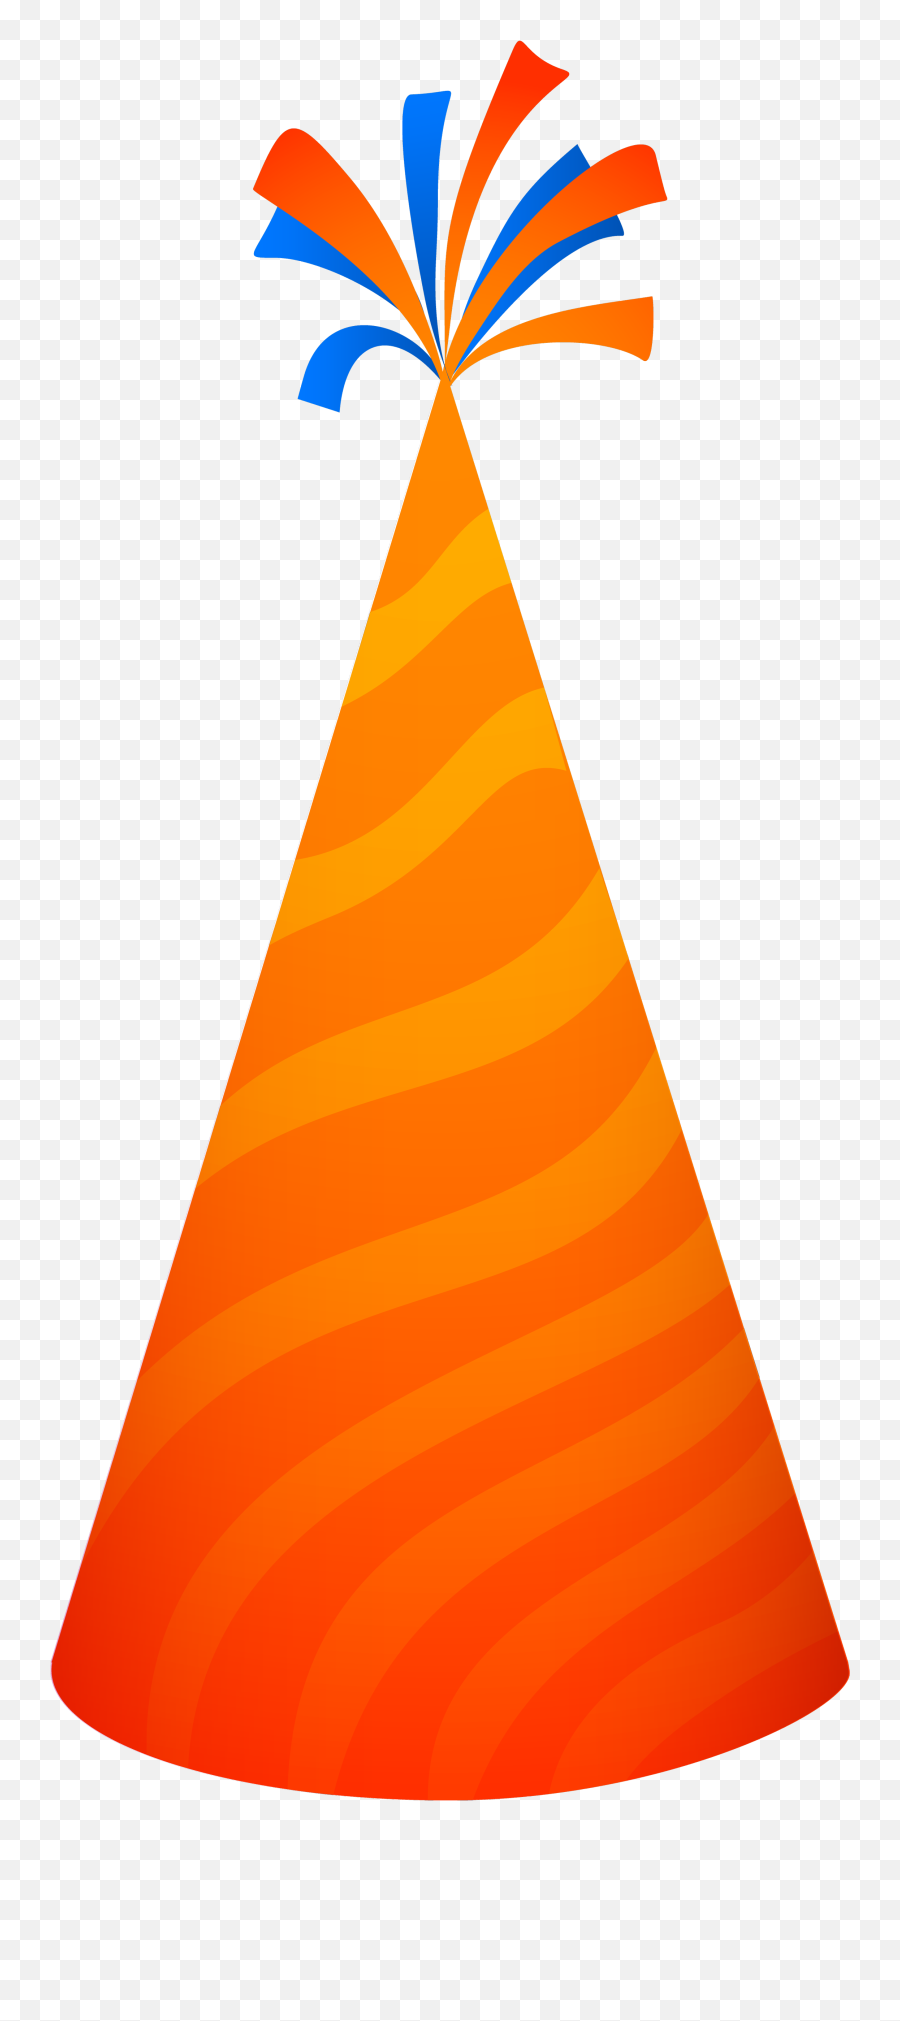 Party Hat Png Image - Pngpix Party Hat Orange,Cartoon Hat Png